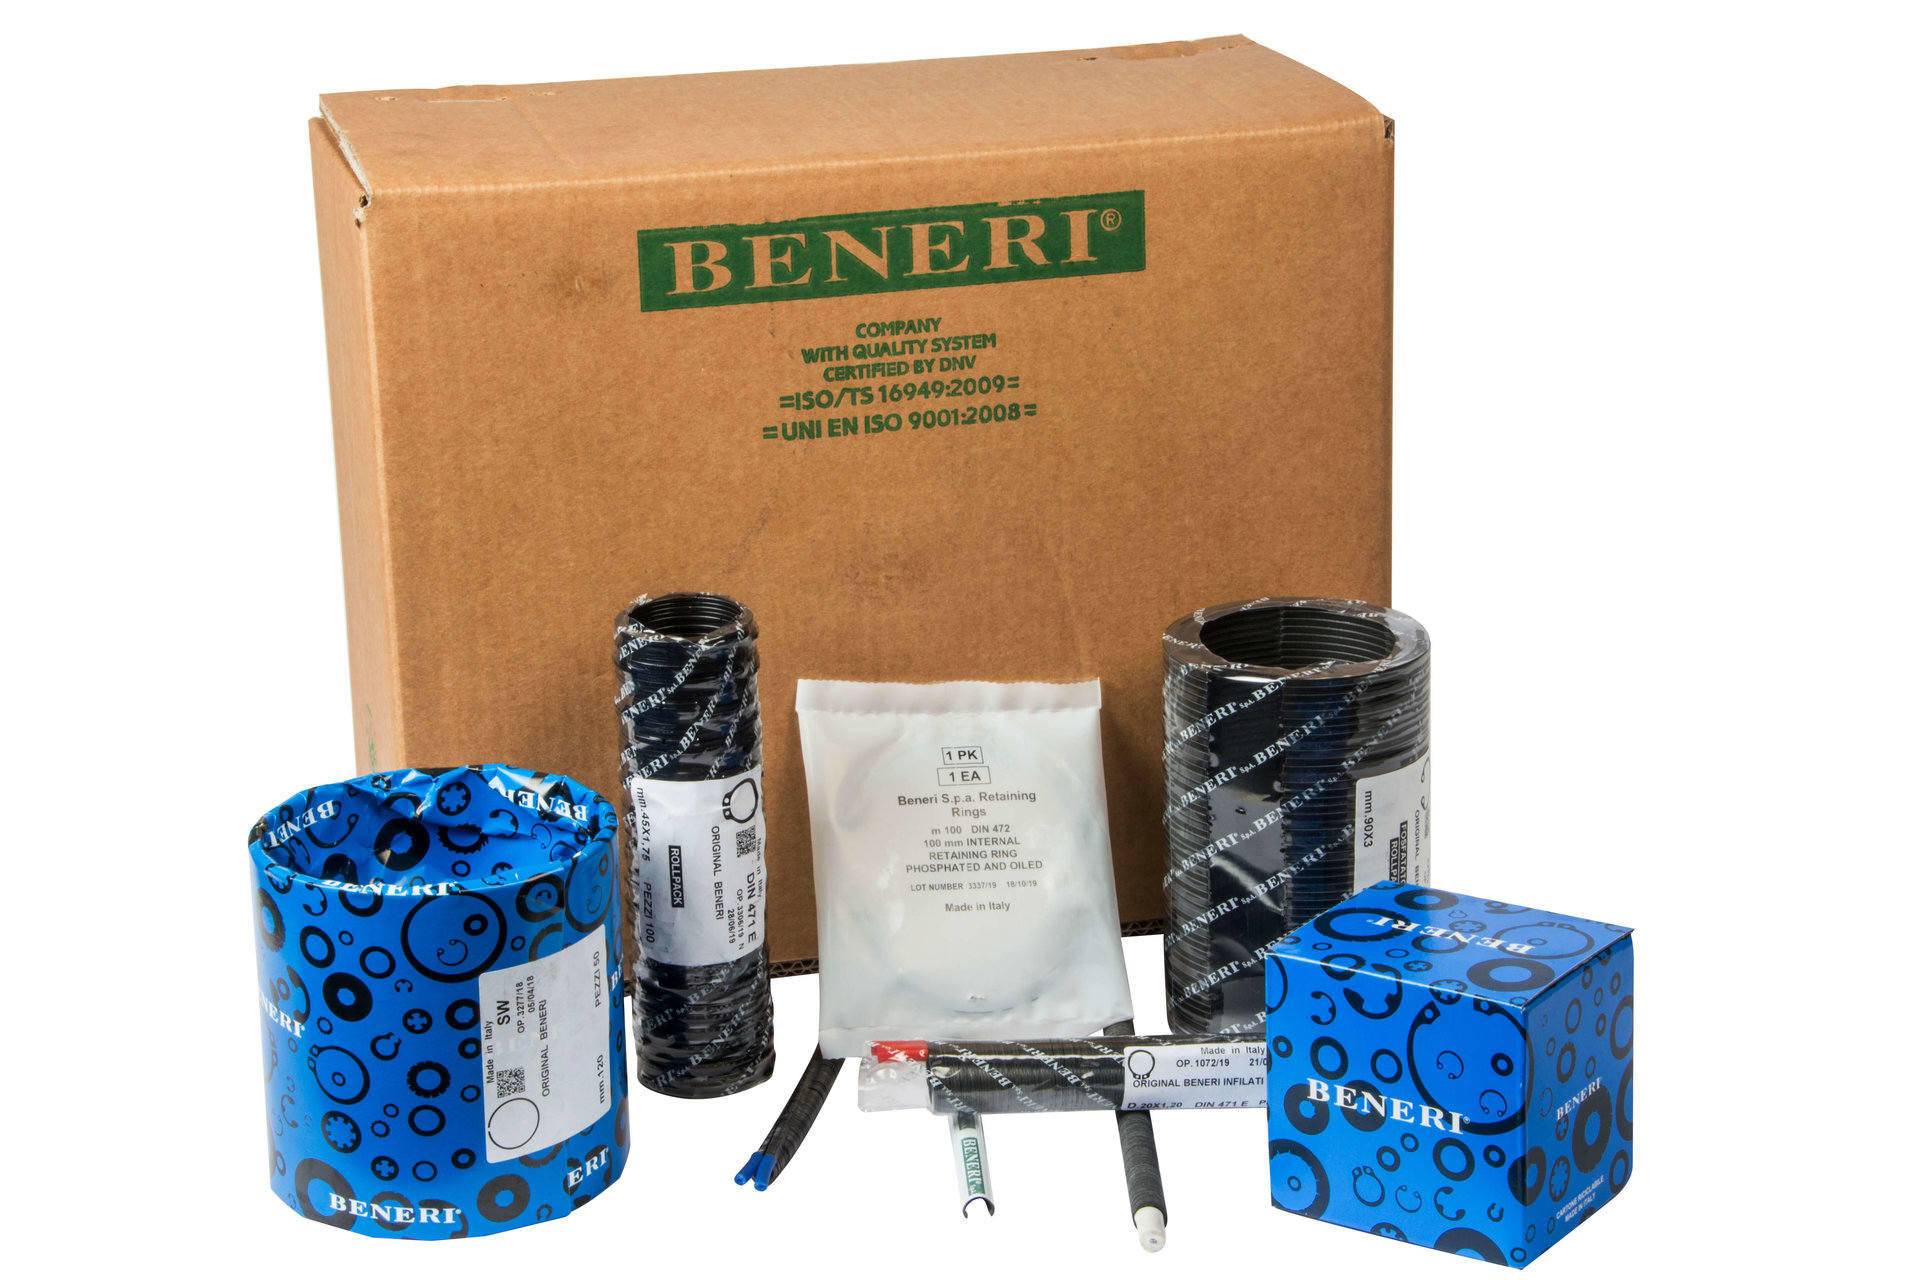 die Verpackung von Beneri-Produkten